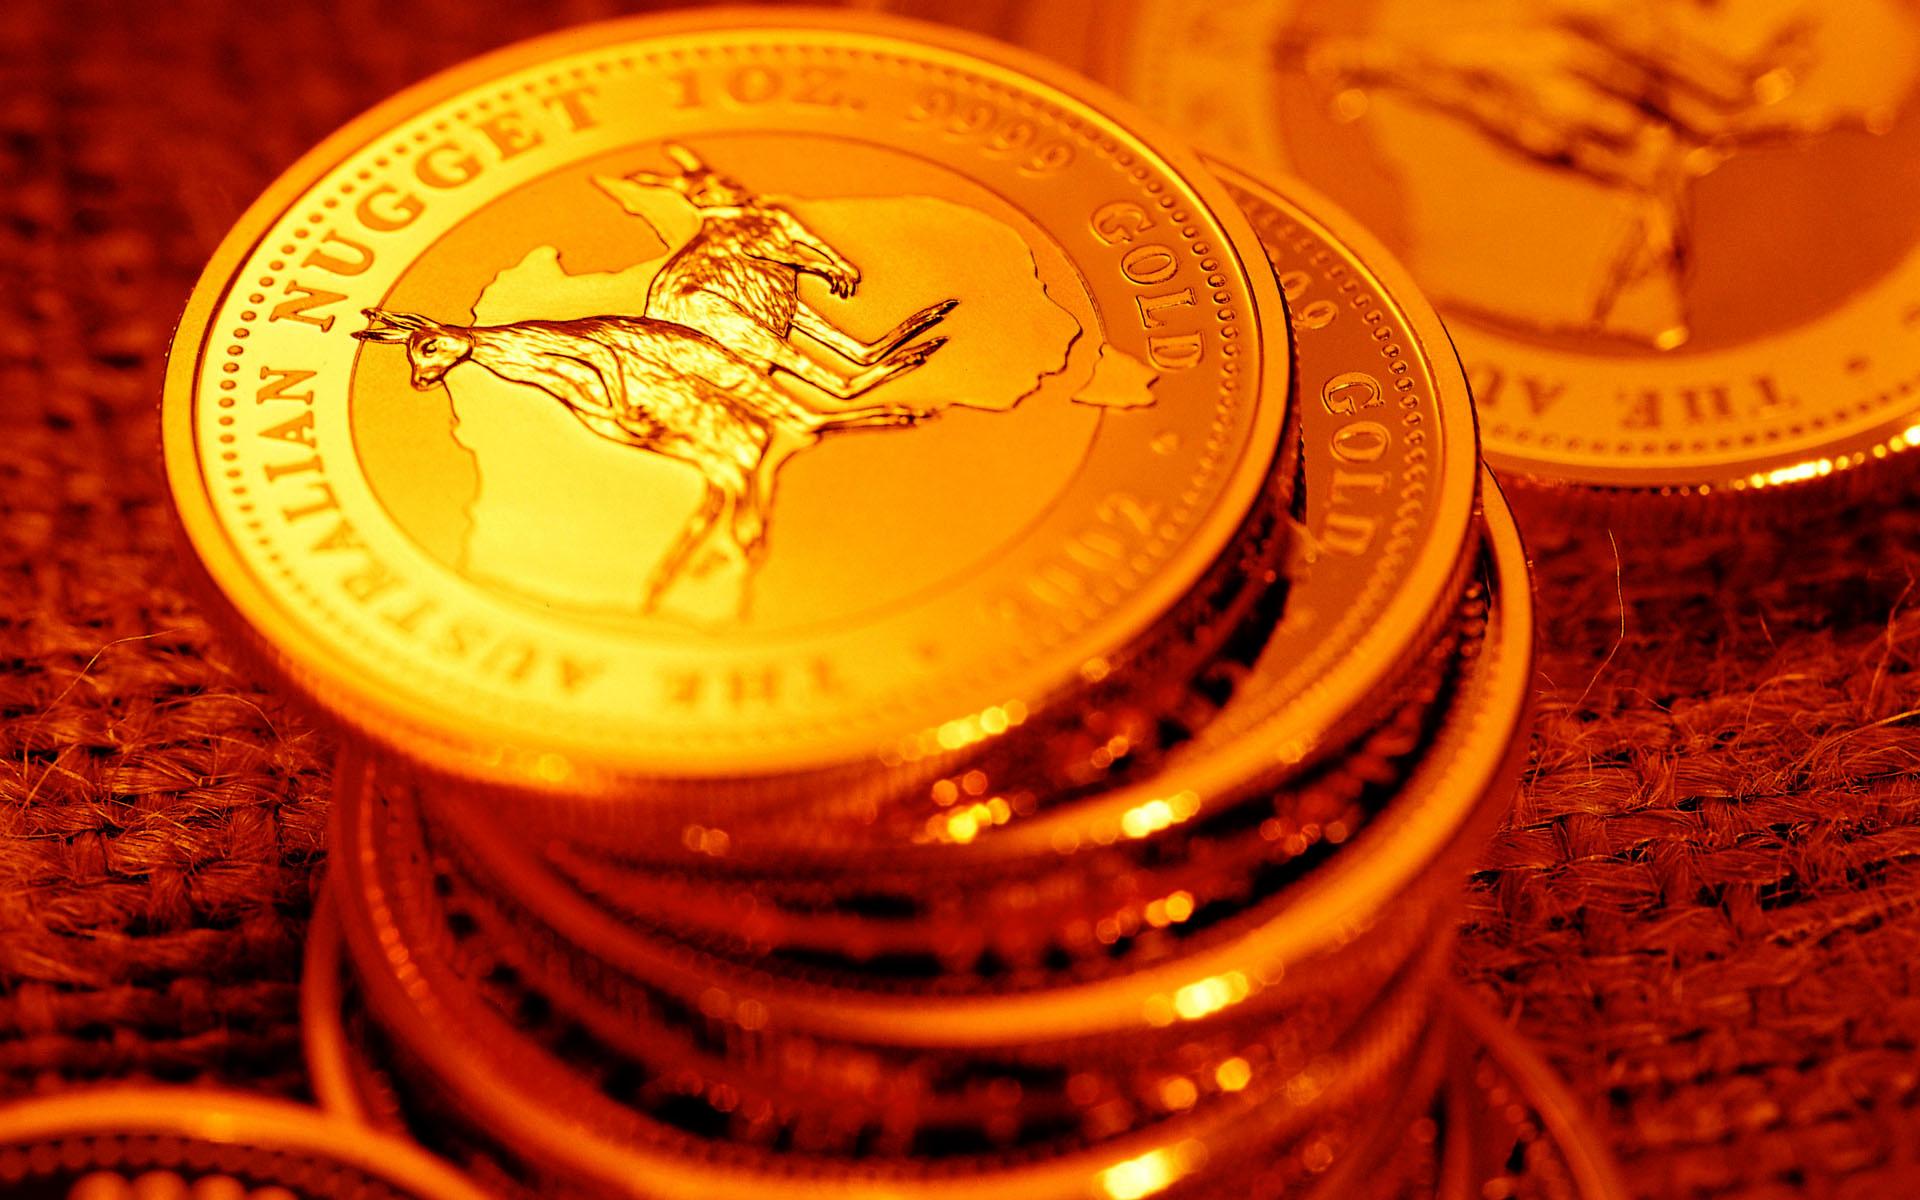 sfondo del desktop d'oro,moneta,ambra,arancia,giallo,metallo